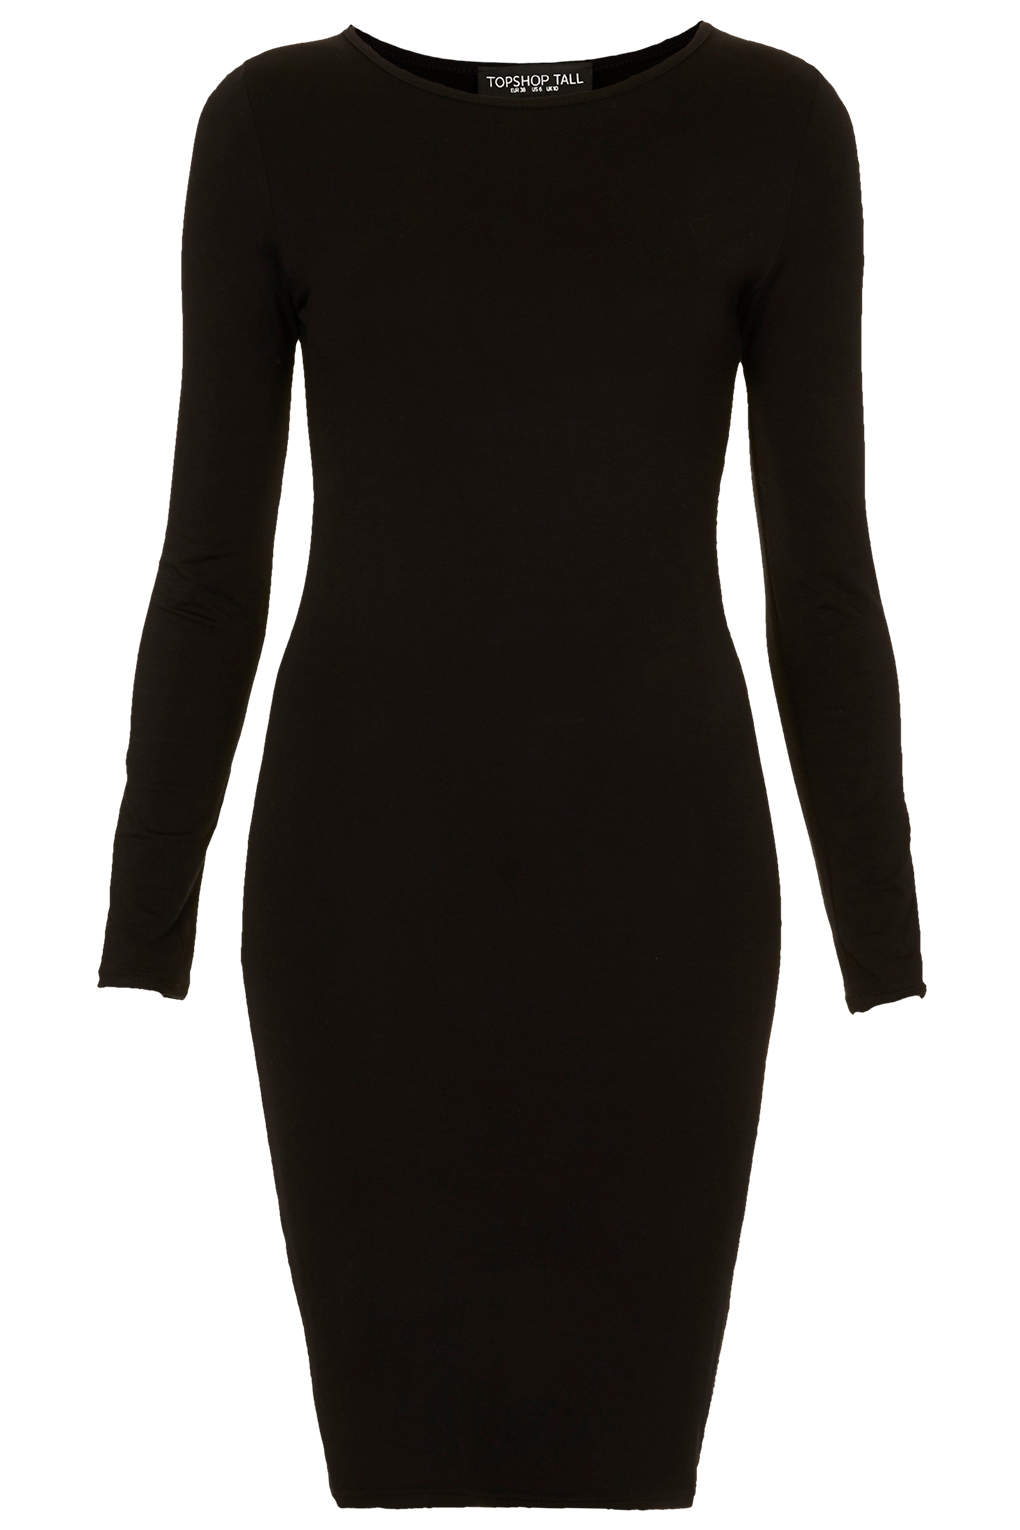 TOPSHOP Tall Plain Mini Bodycon Dress in Black - Lyst